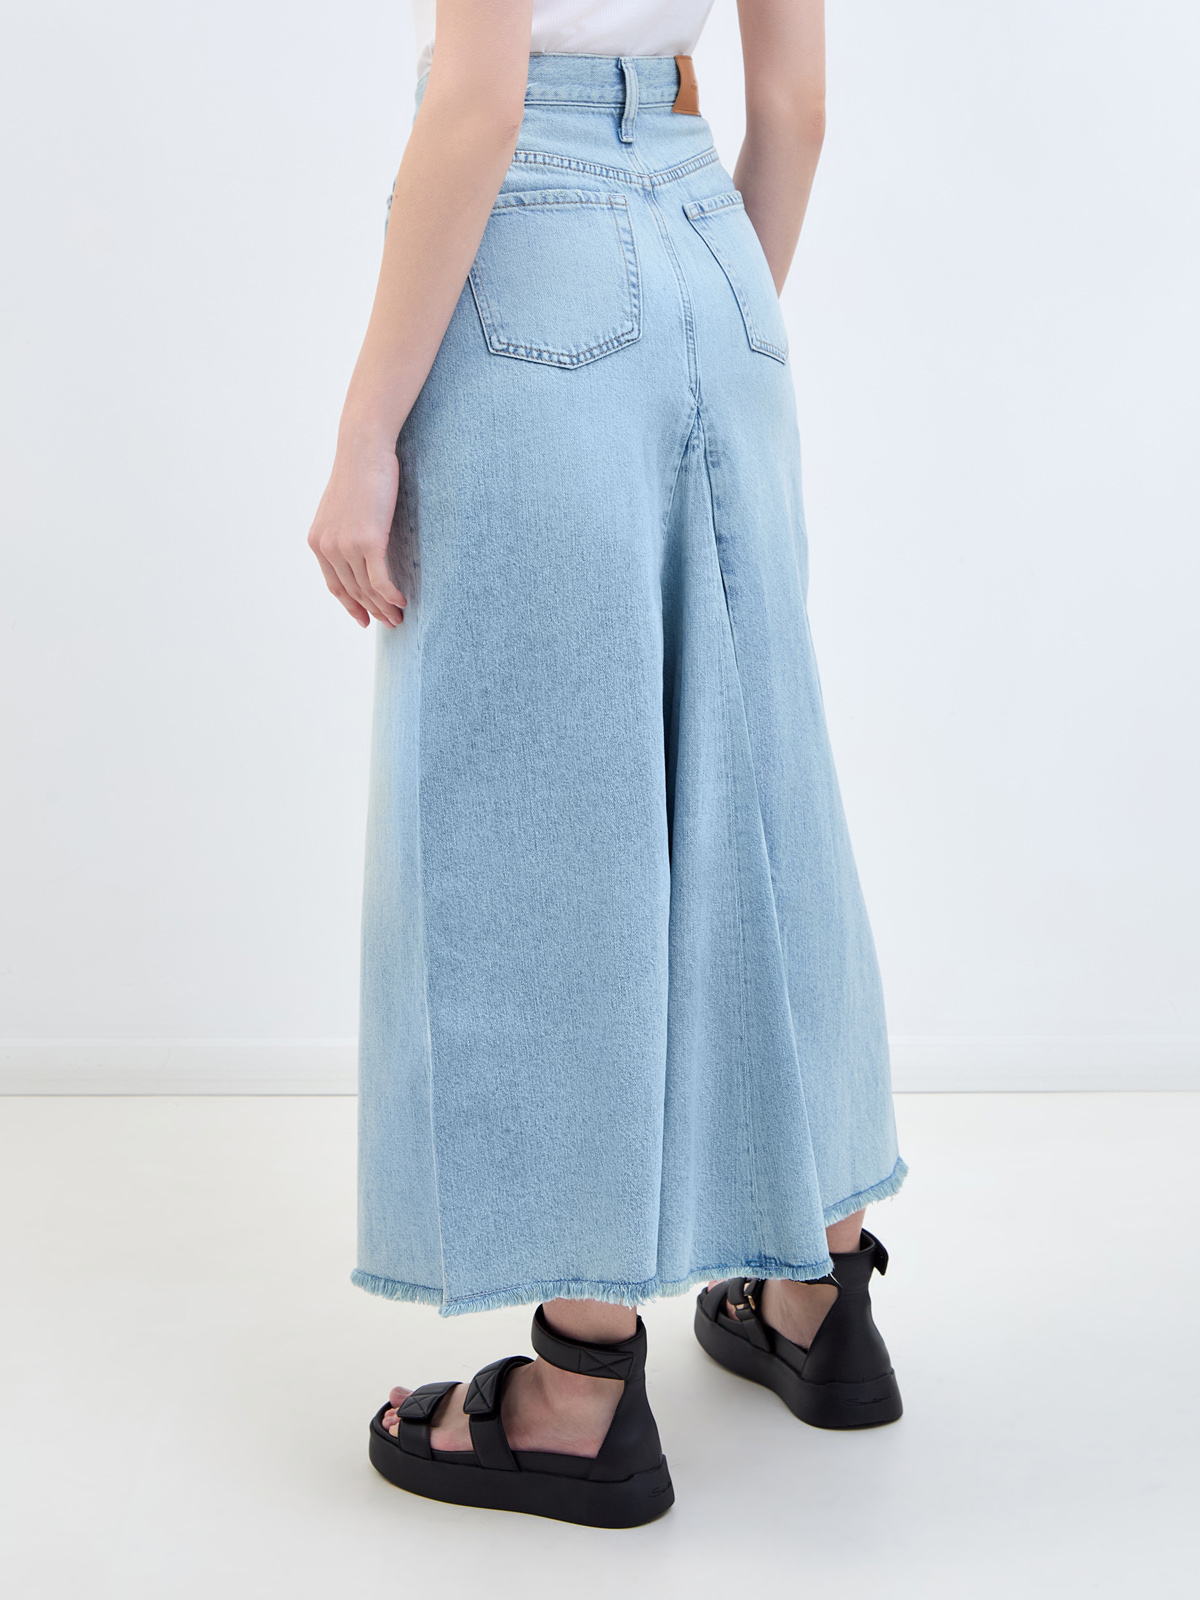 Расклешенная юбка-макси в стиле вестерн из выбеленного денима 7 FOR ALL MANKIND, цвет голубой - фото 4